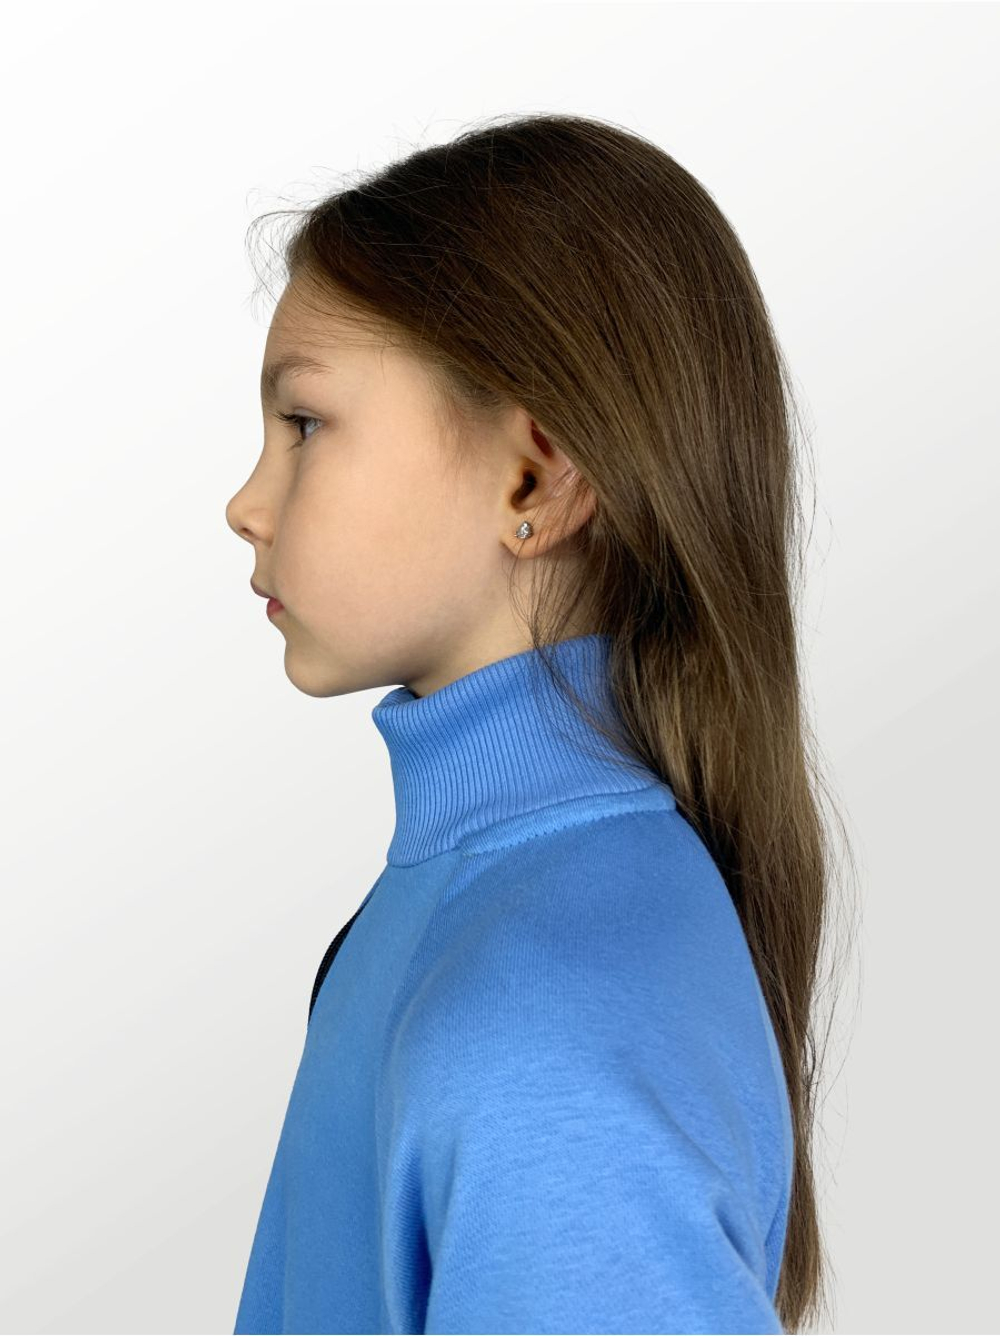 Комбинезон для детей, модель №1, рост 92 см, голубой